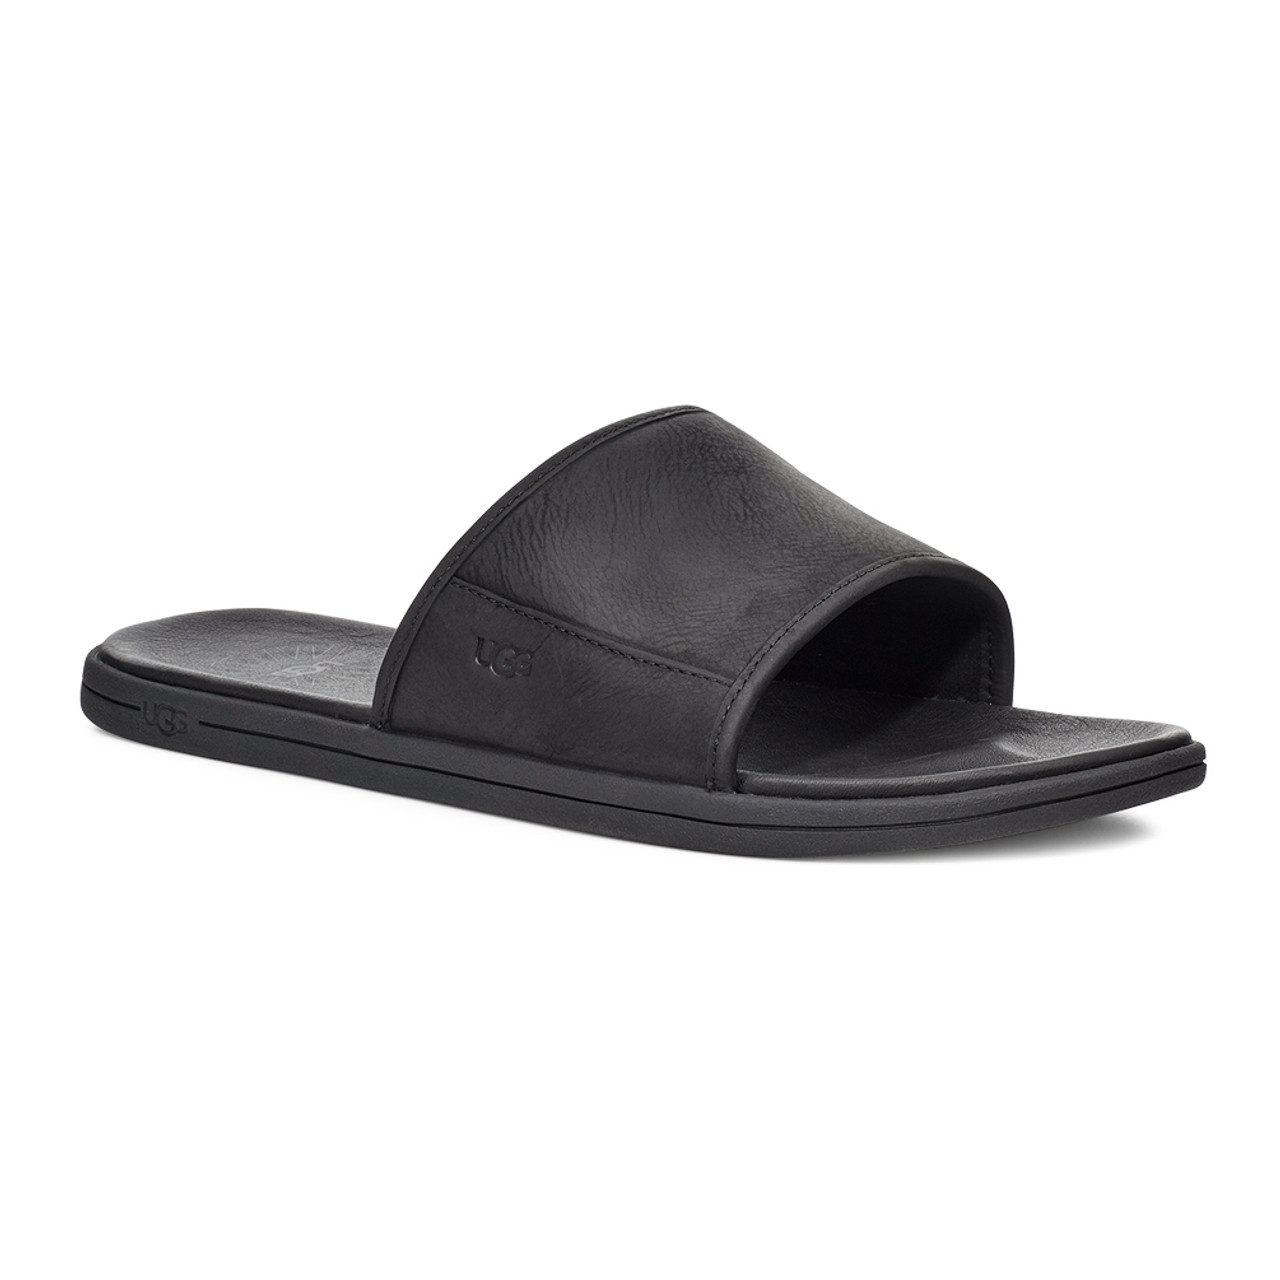 UGG Men's Seaside Slide - Black | Discount UGG Mens Sandals & More -  Shoolu.com | Shoolu.com